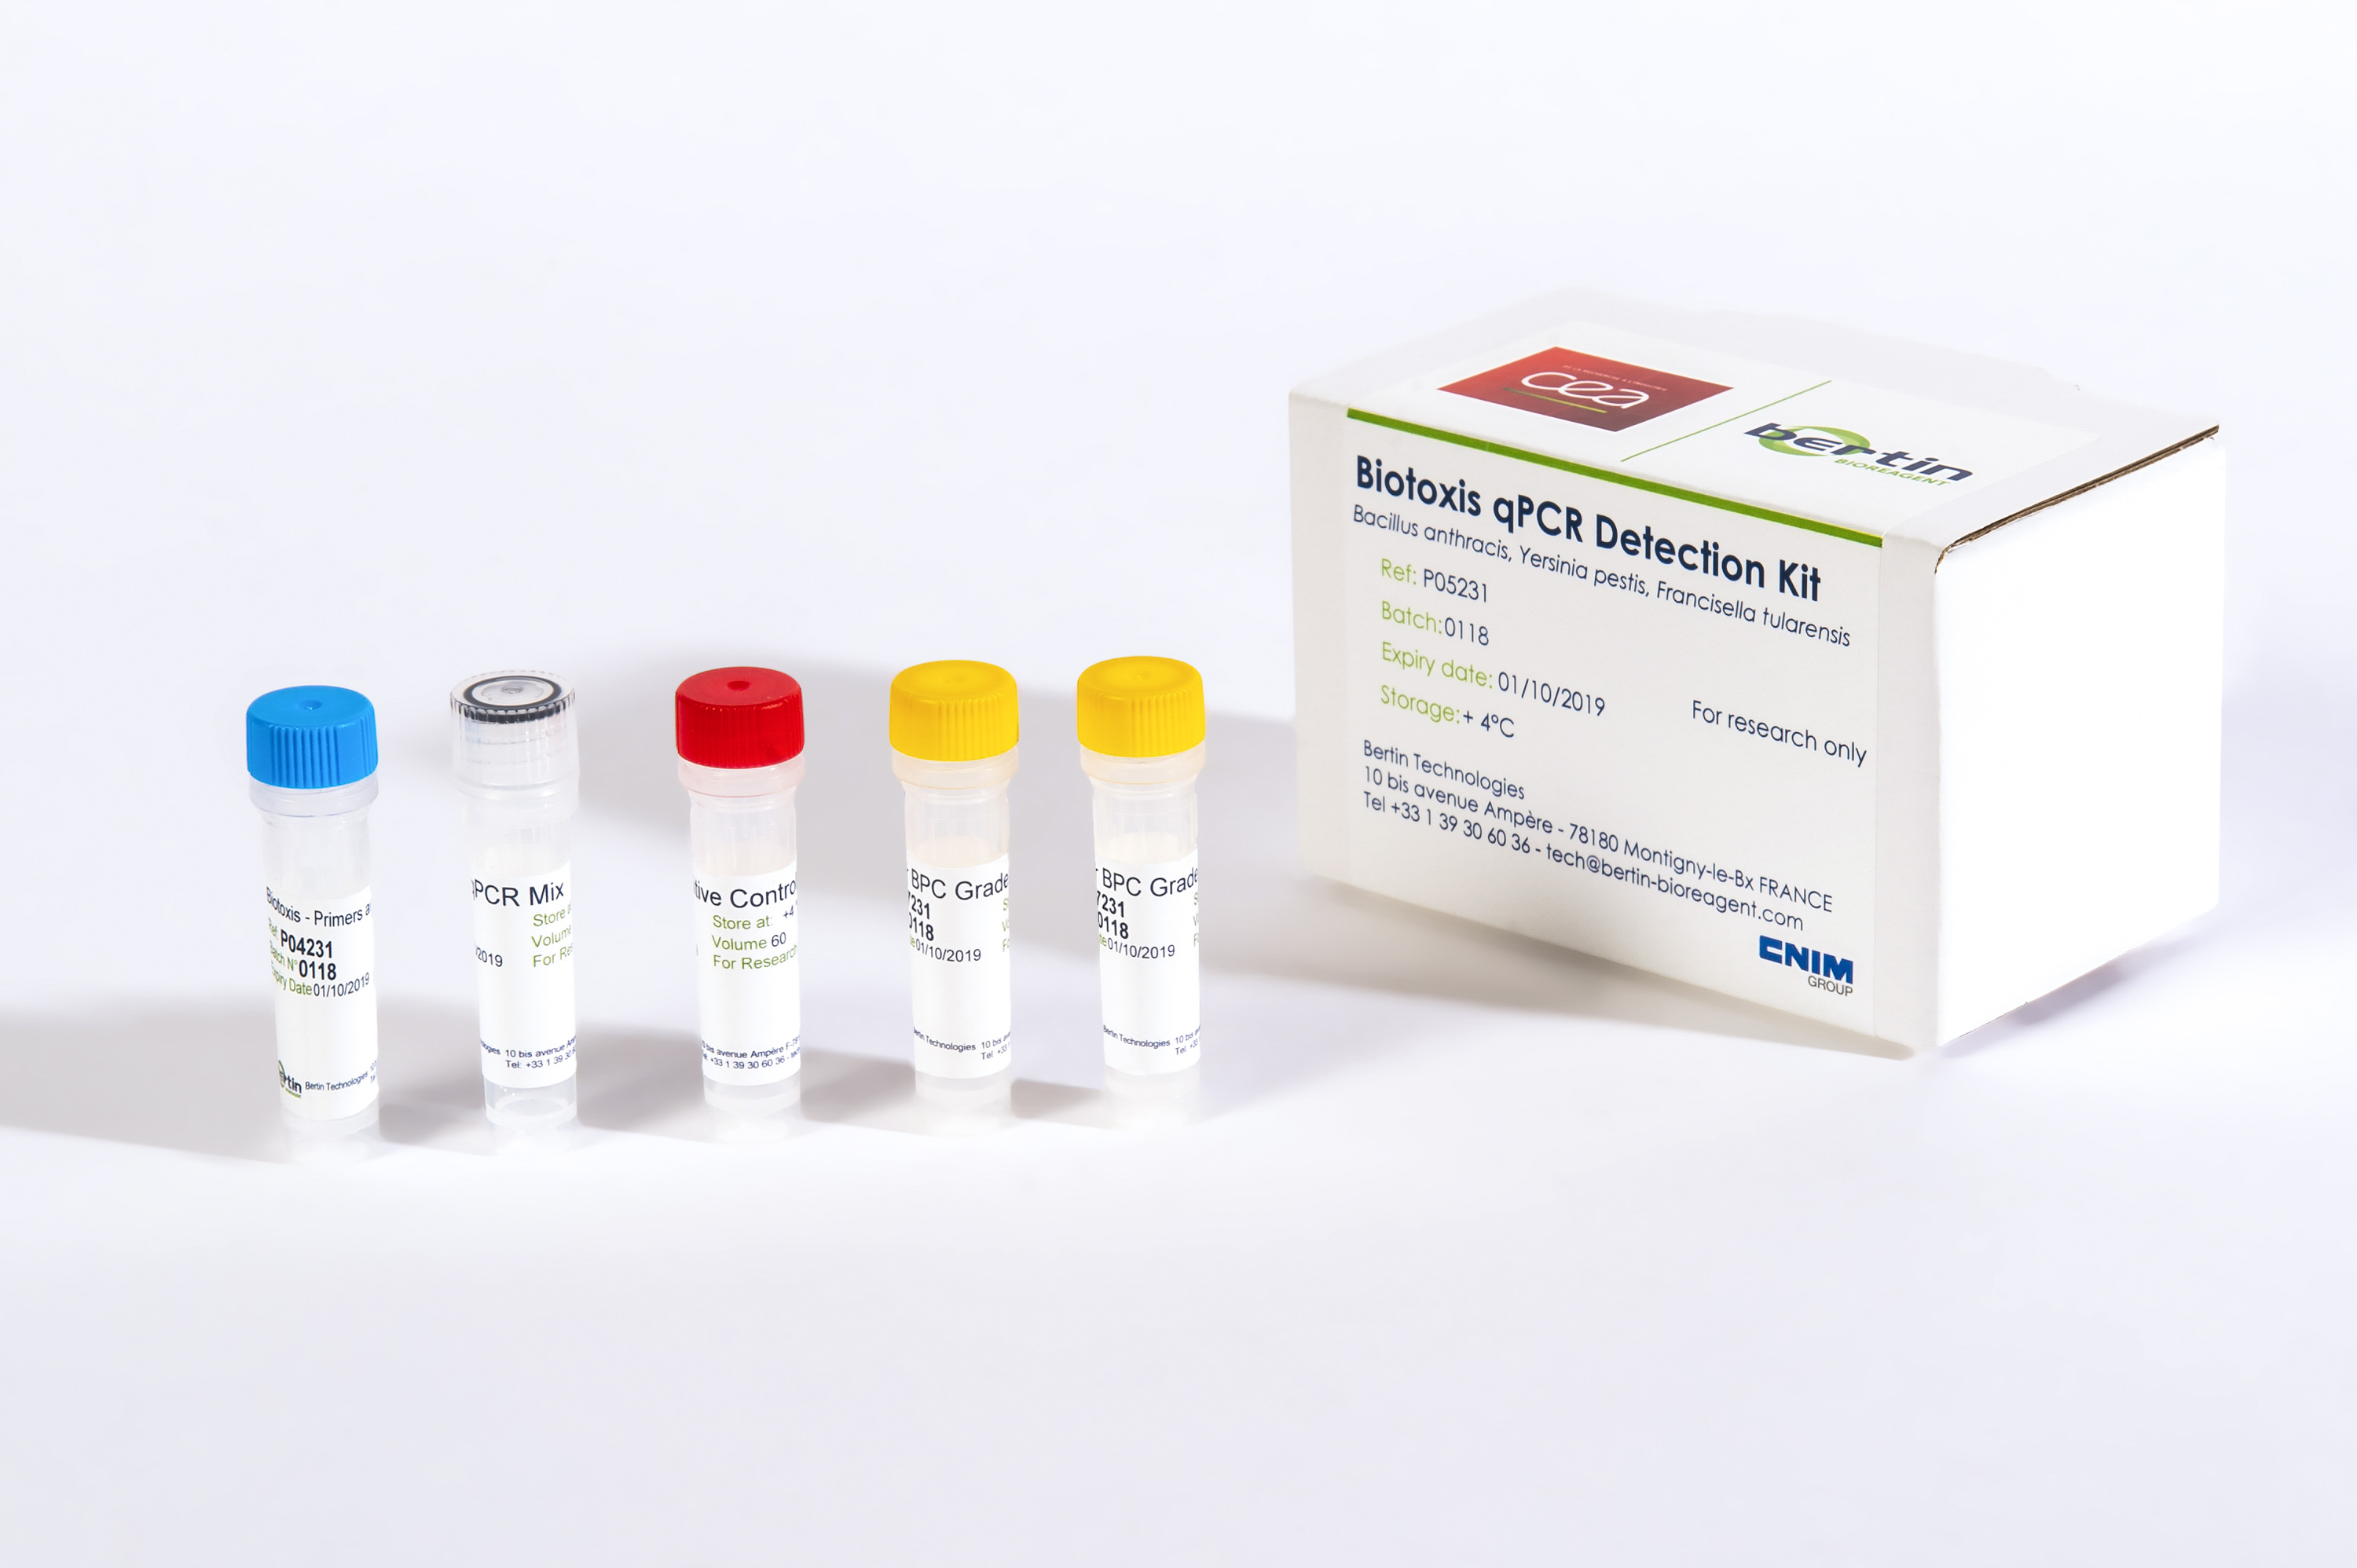 Biotoxis qPCR Detection Kit